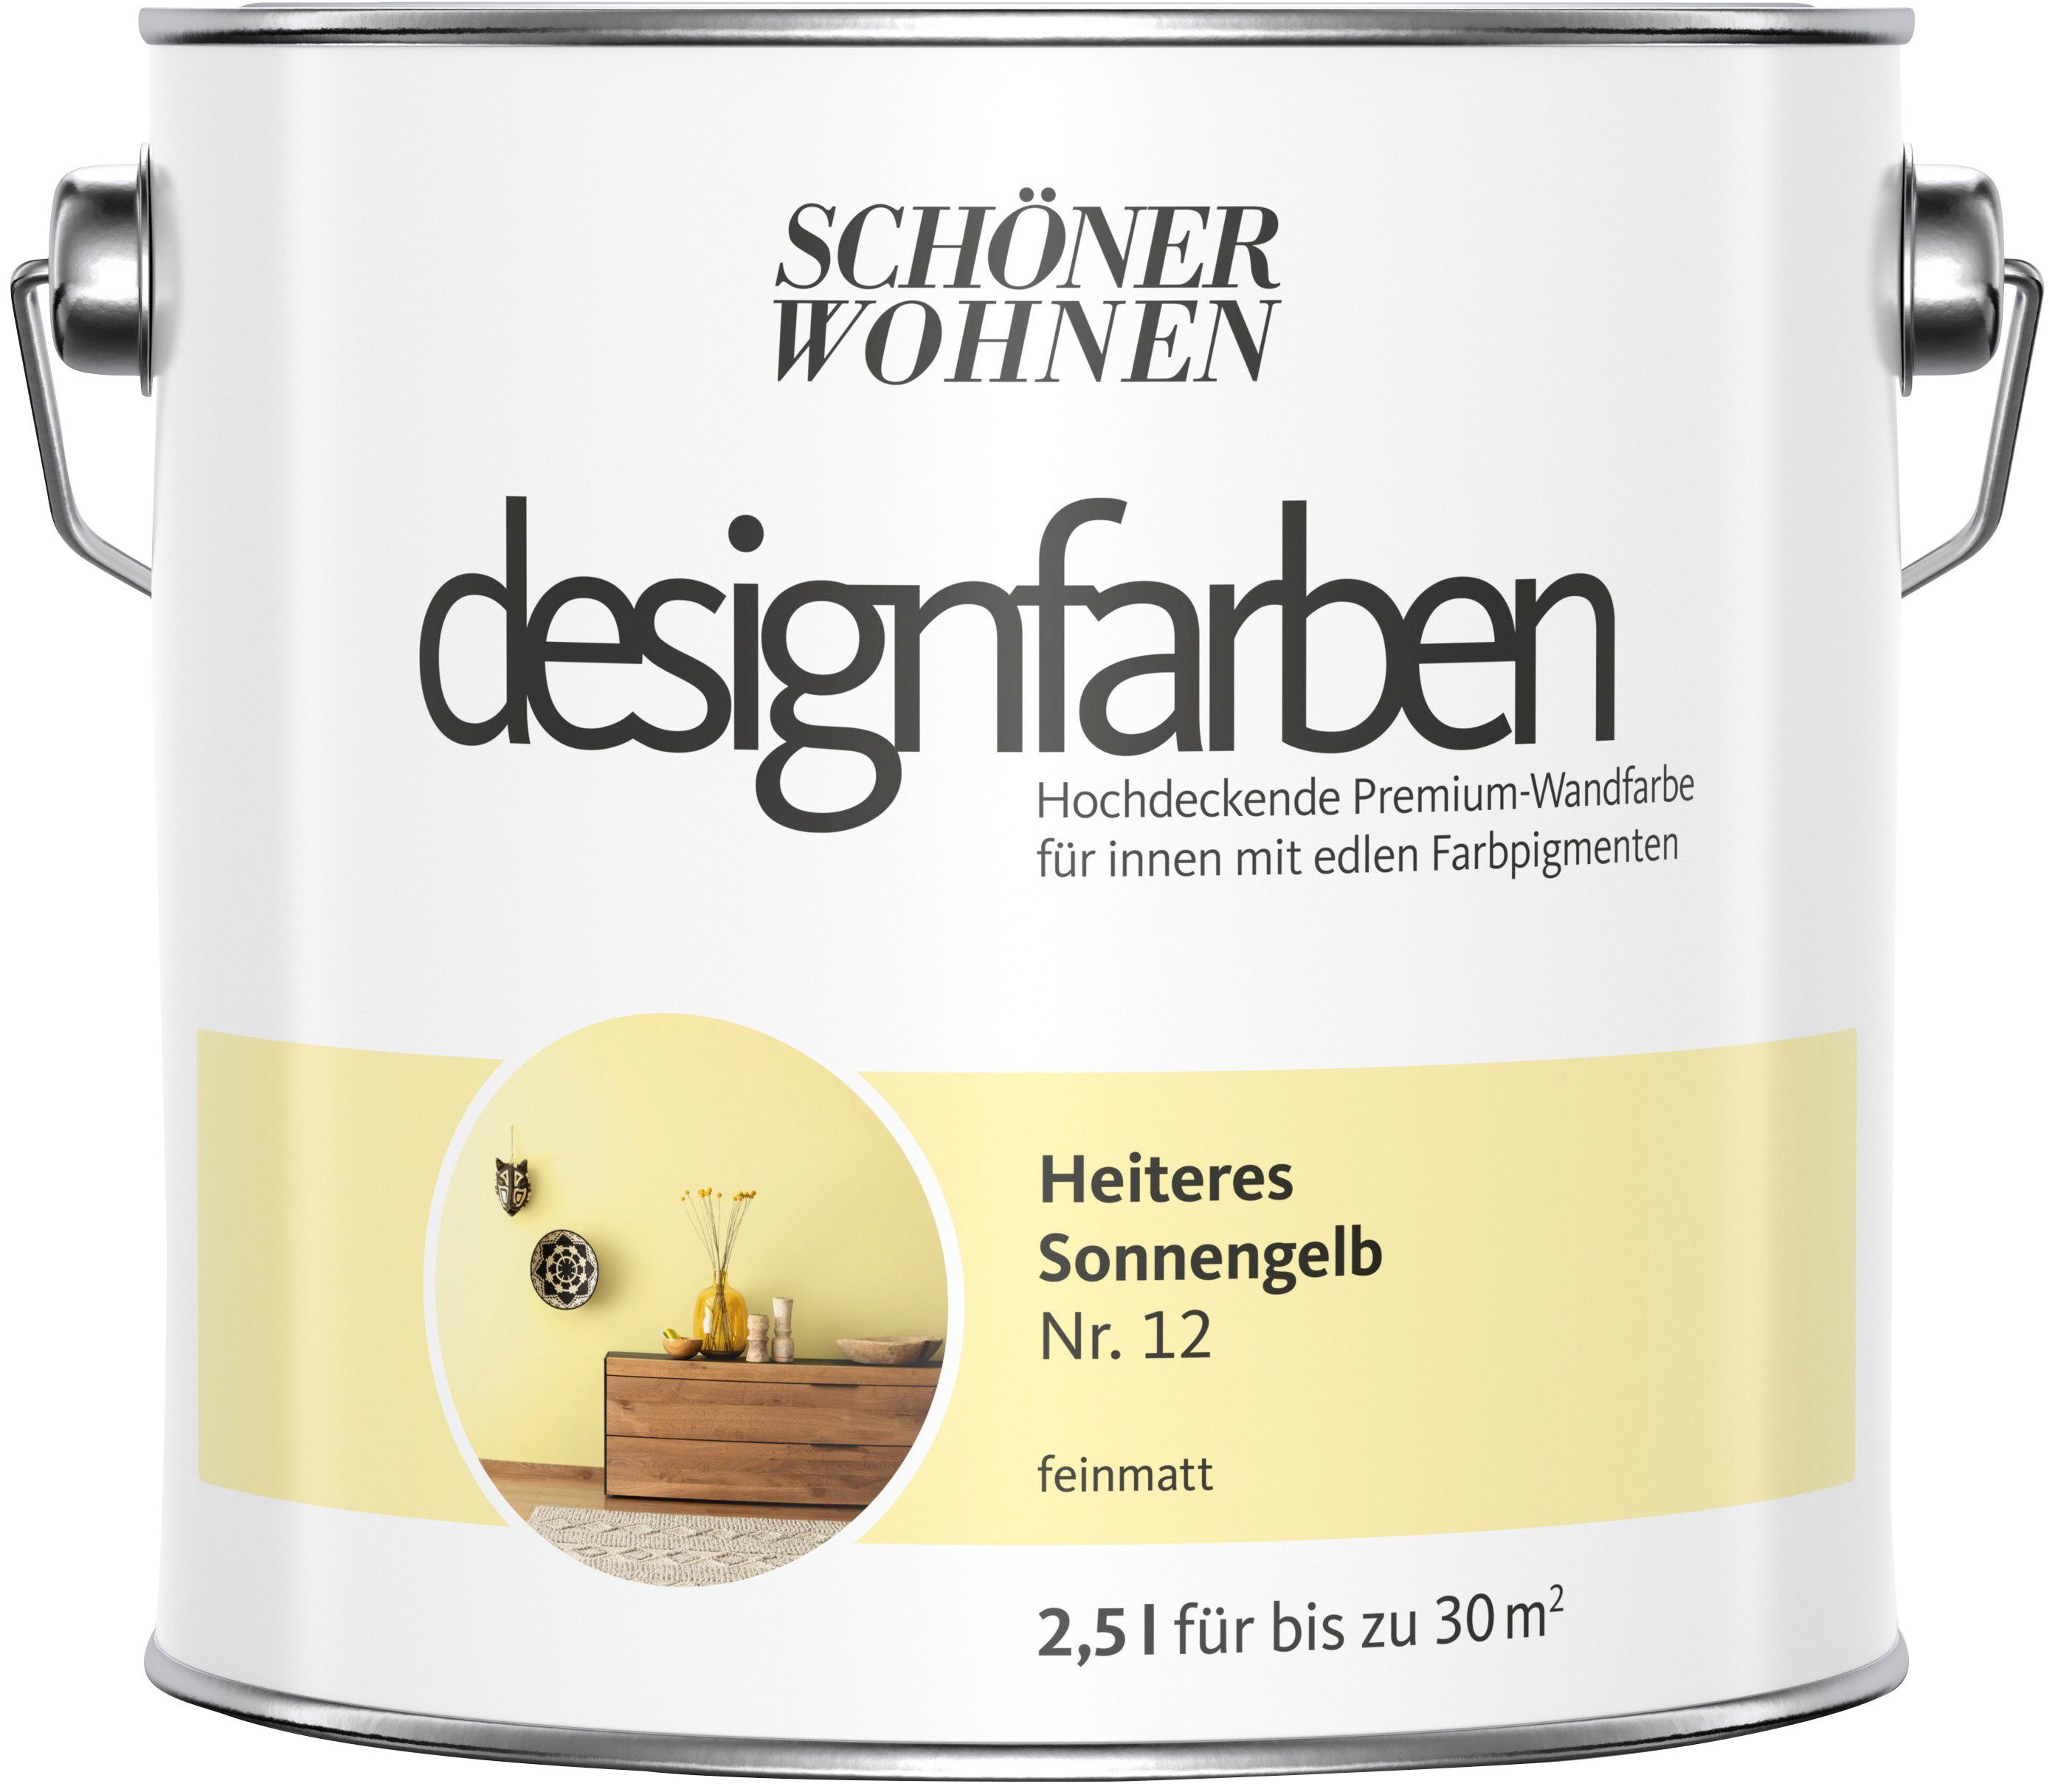 SCHÖNER WOHNEN FARBE Wand- und Deckenfarbe Designfarben, 2,5 Liter, Heiteres Sonnengelb Nr. 12, hochdeckende Premium-Wandfarbe